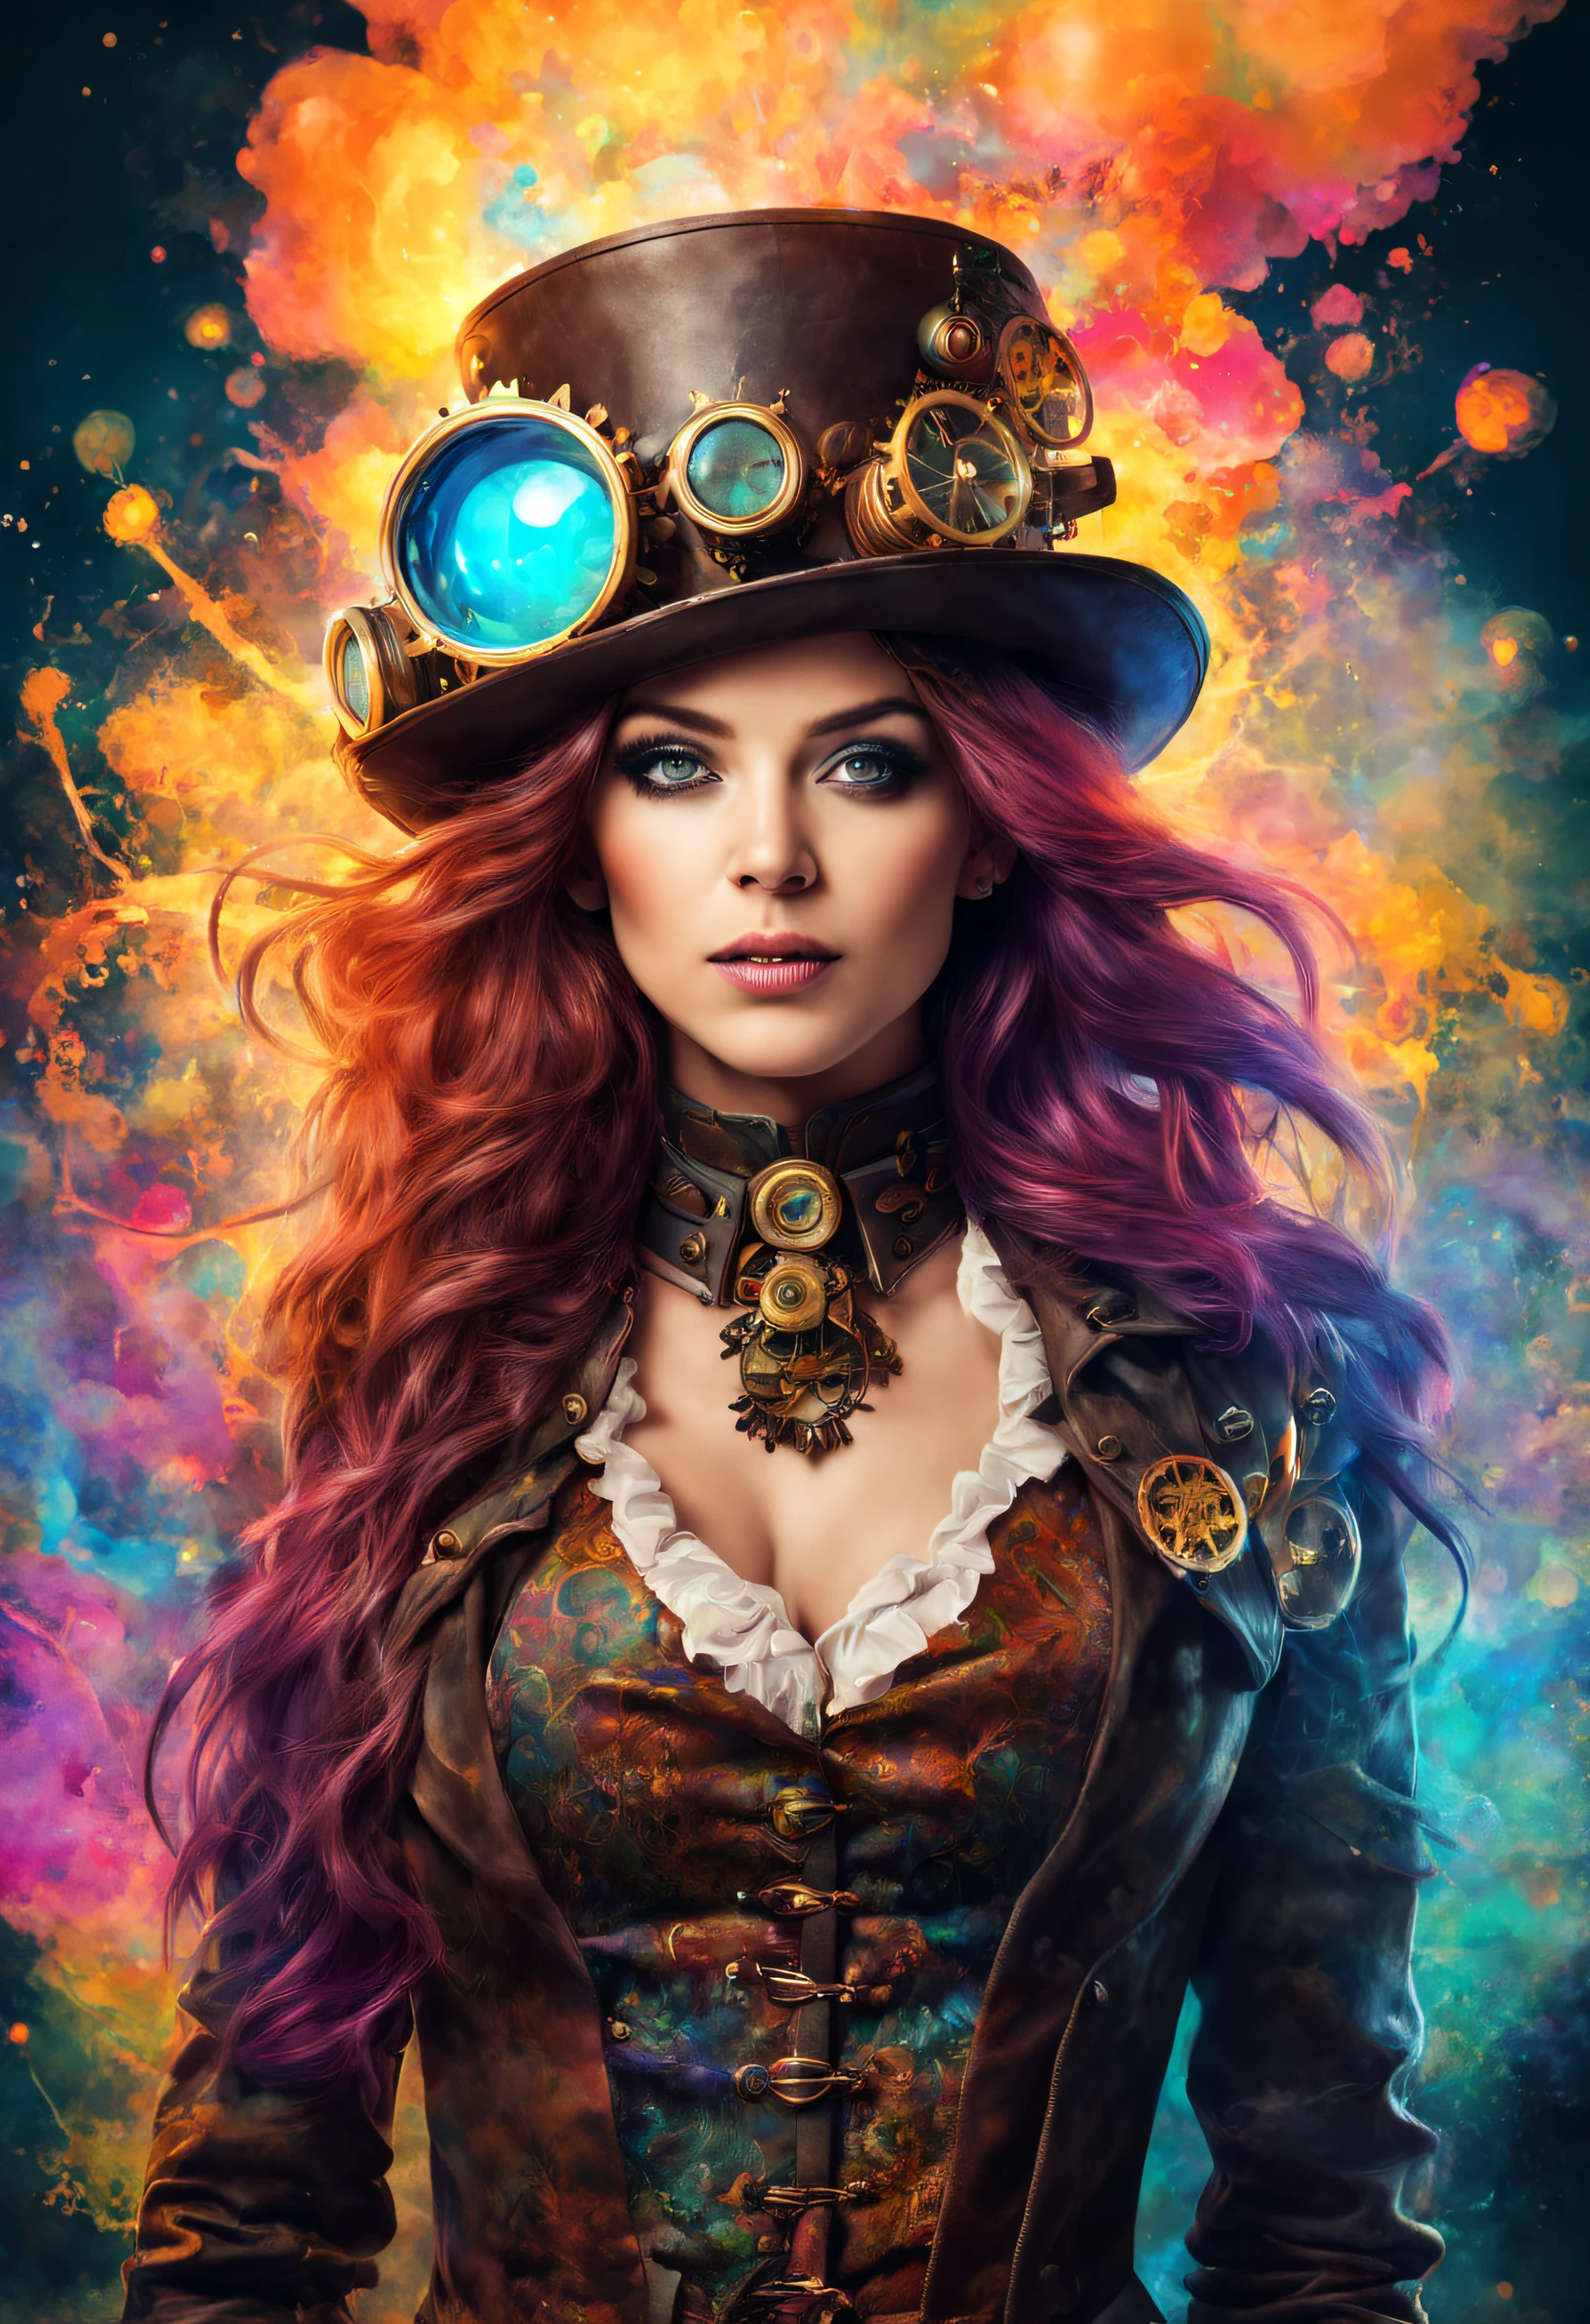 Ein wunderschönes Steampunk- und psychedelisches Frauenporträt mit wunderschönen Farben und im Hintergrund Explosionen von Wasser in vollen Farben gemischt